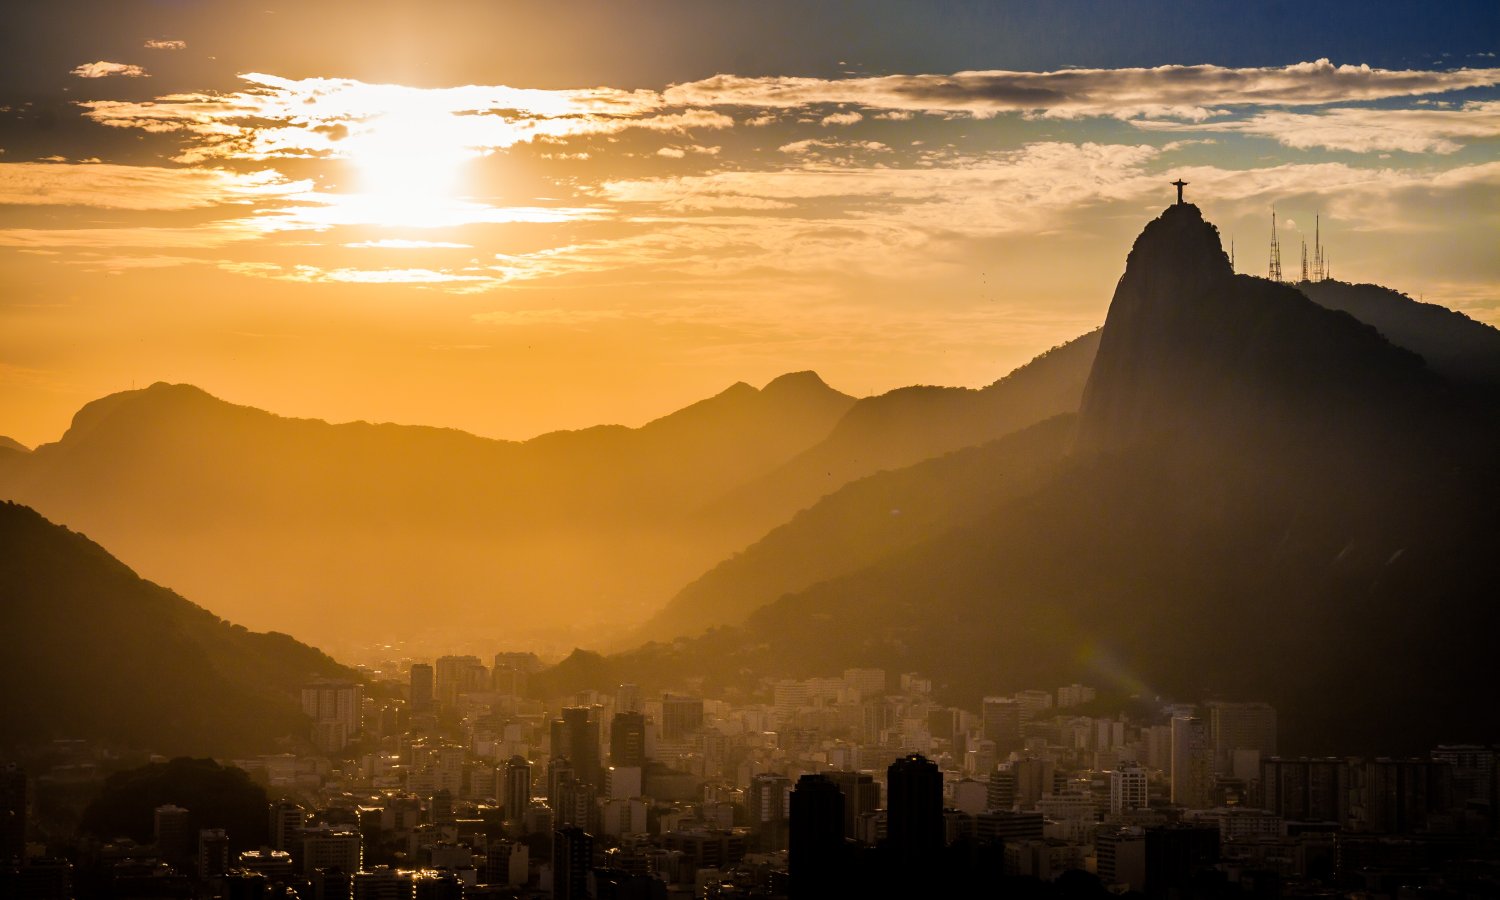 The mountains of Rio de Janeiro